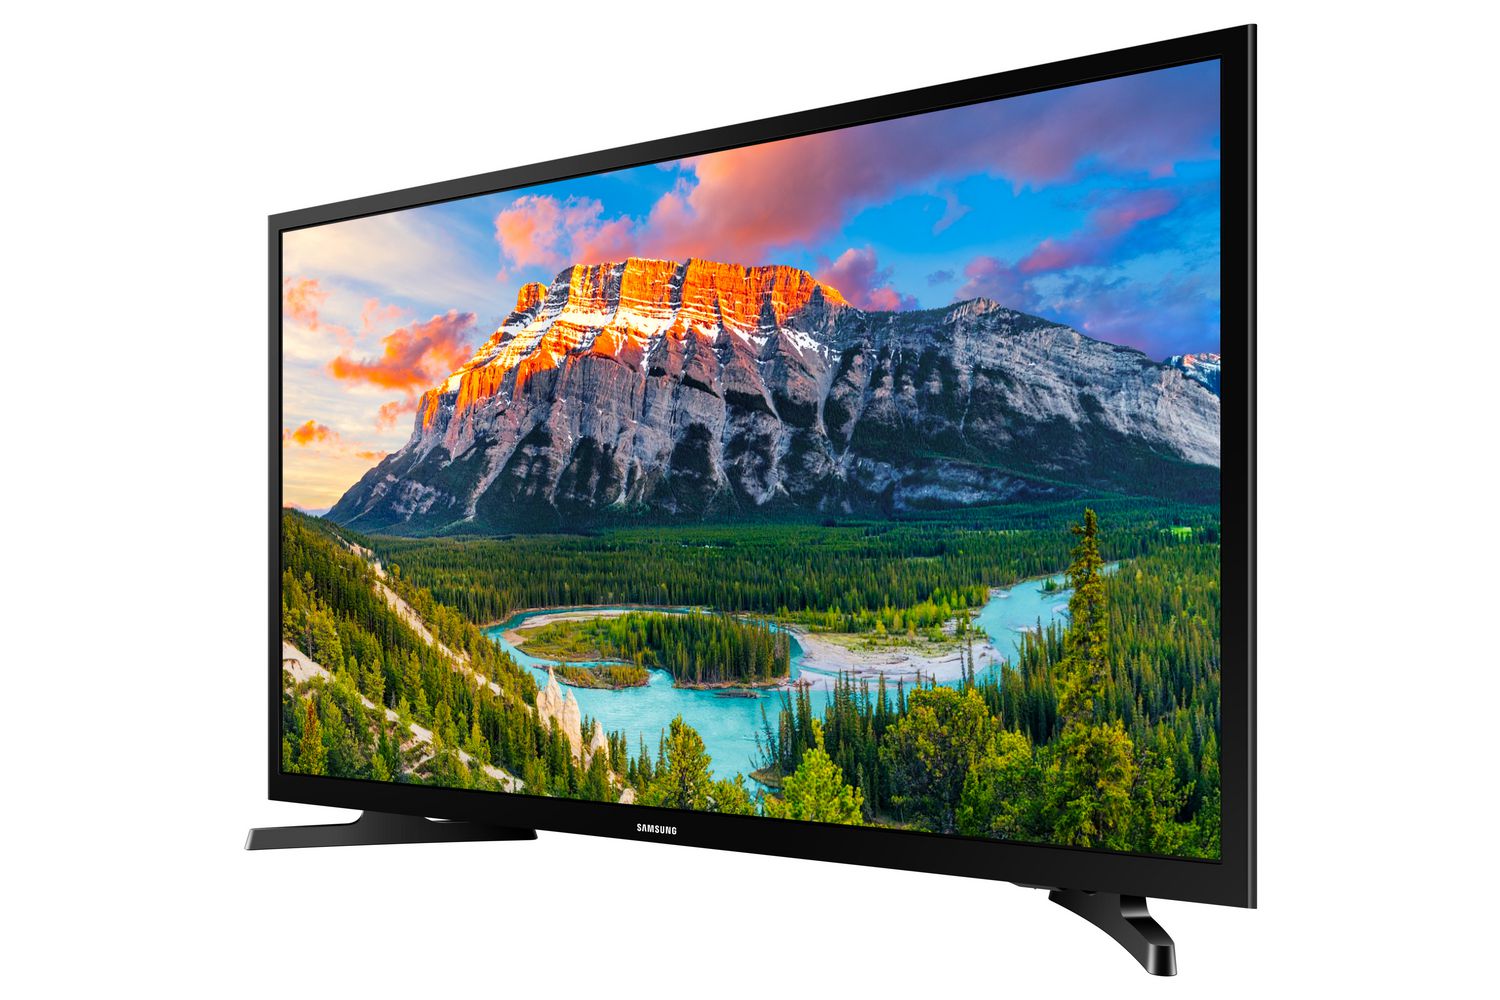 lunes Nos vemos código Morse Samsung 43" Tizen Smart LED TV - UN43N5300 | Walmart Canada